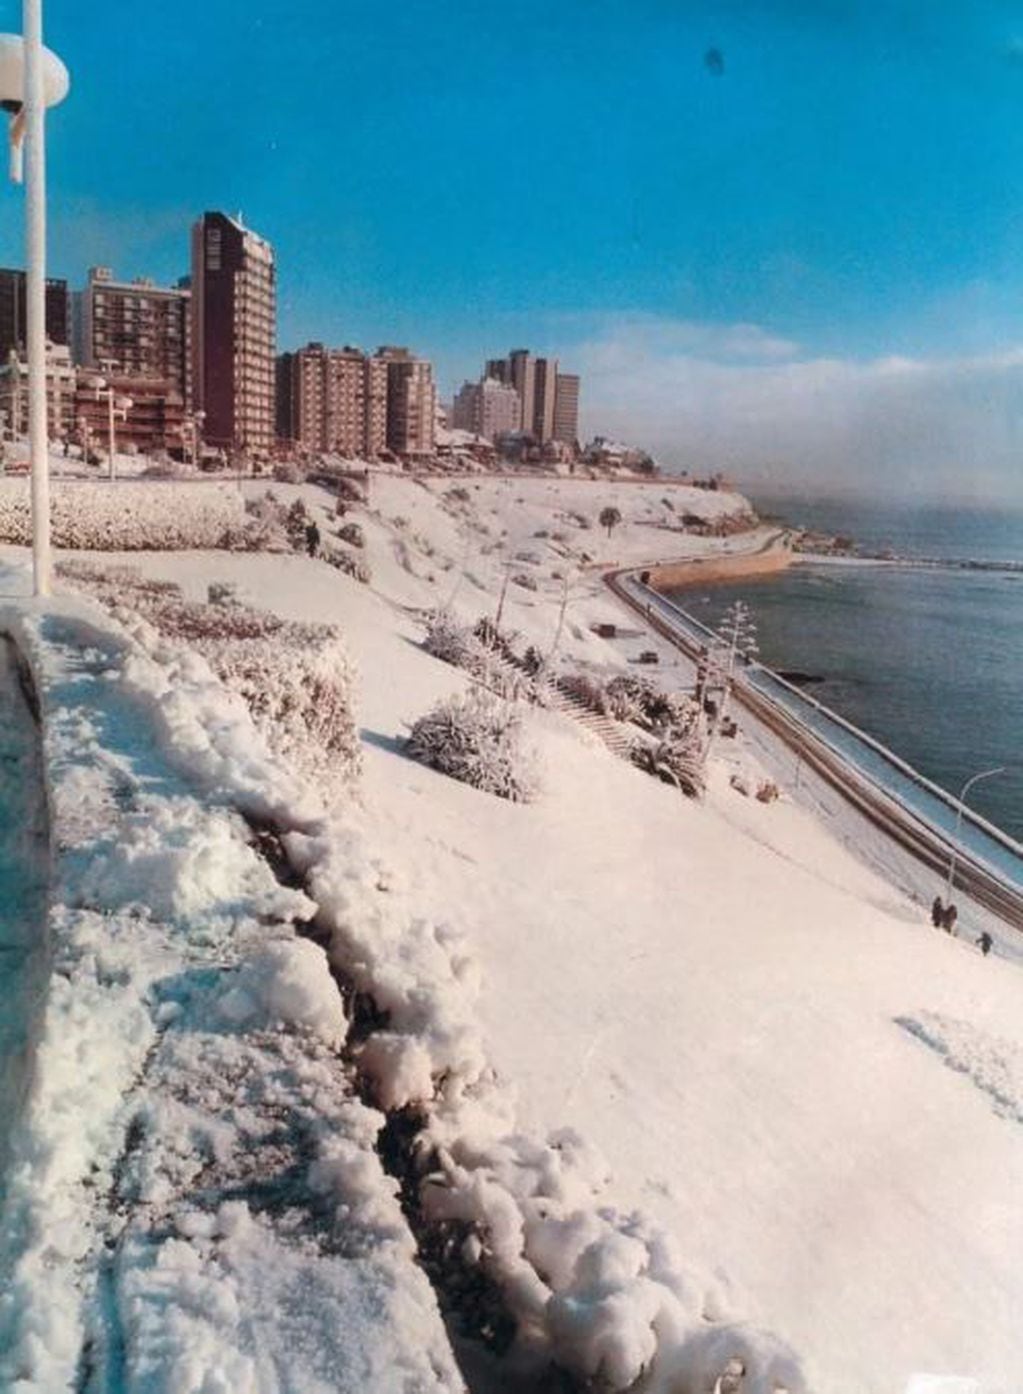 La arena fue cubierta por el manto blanco de la nieve (La Capital).